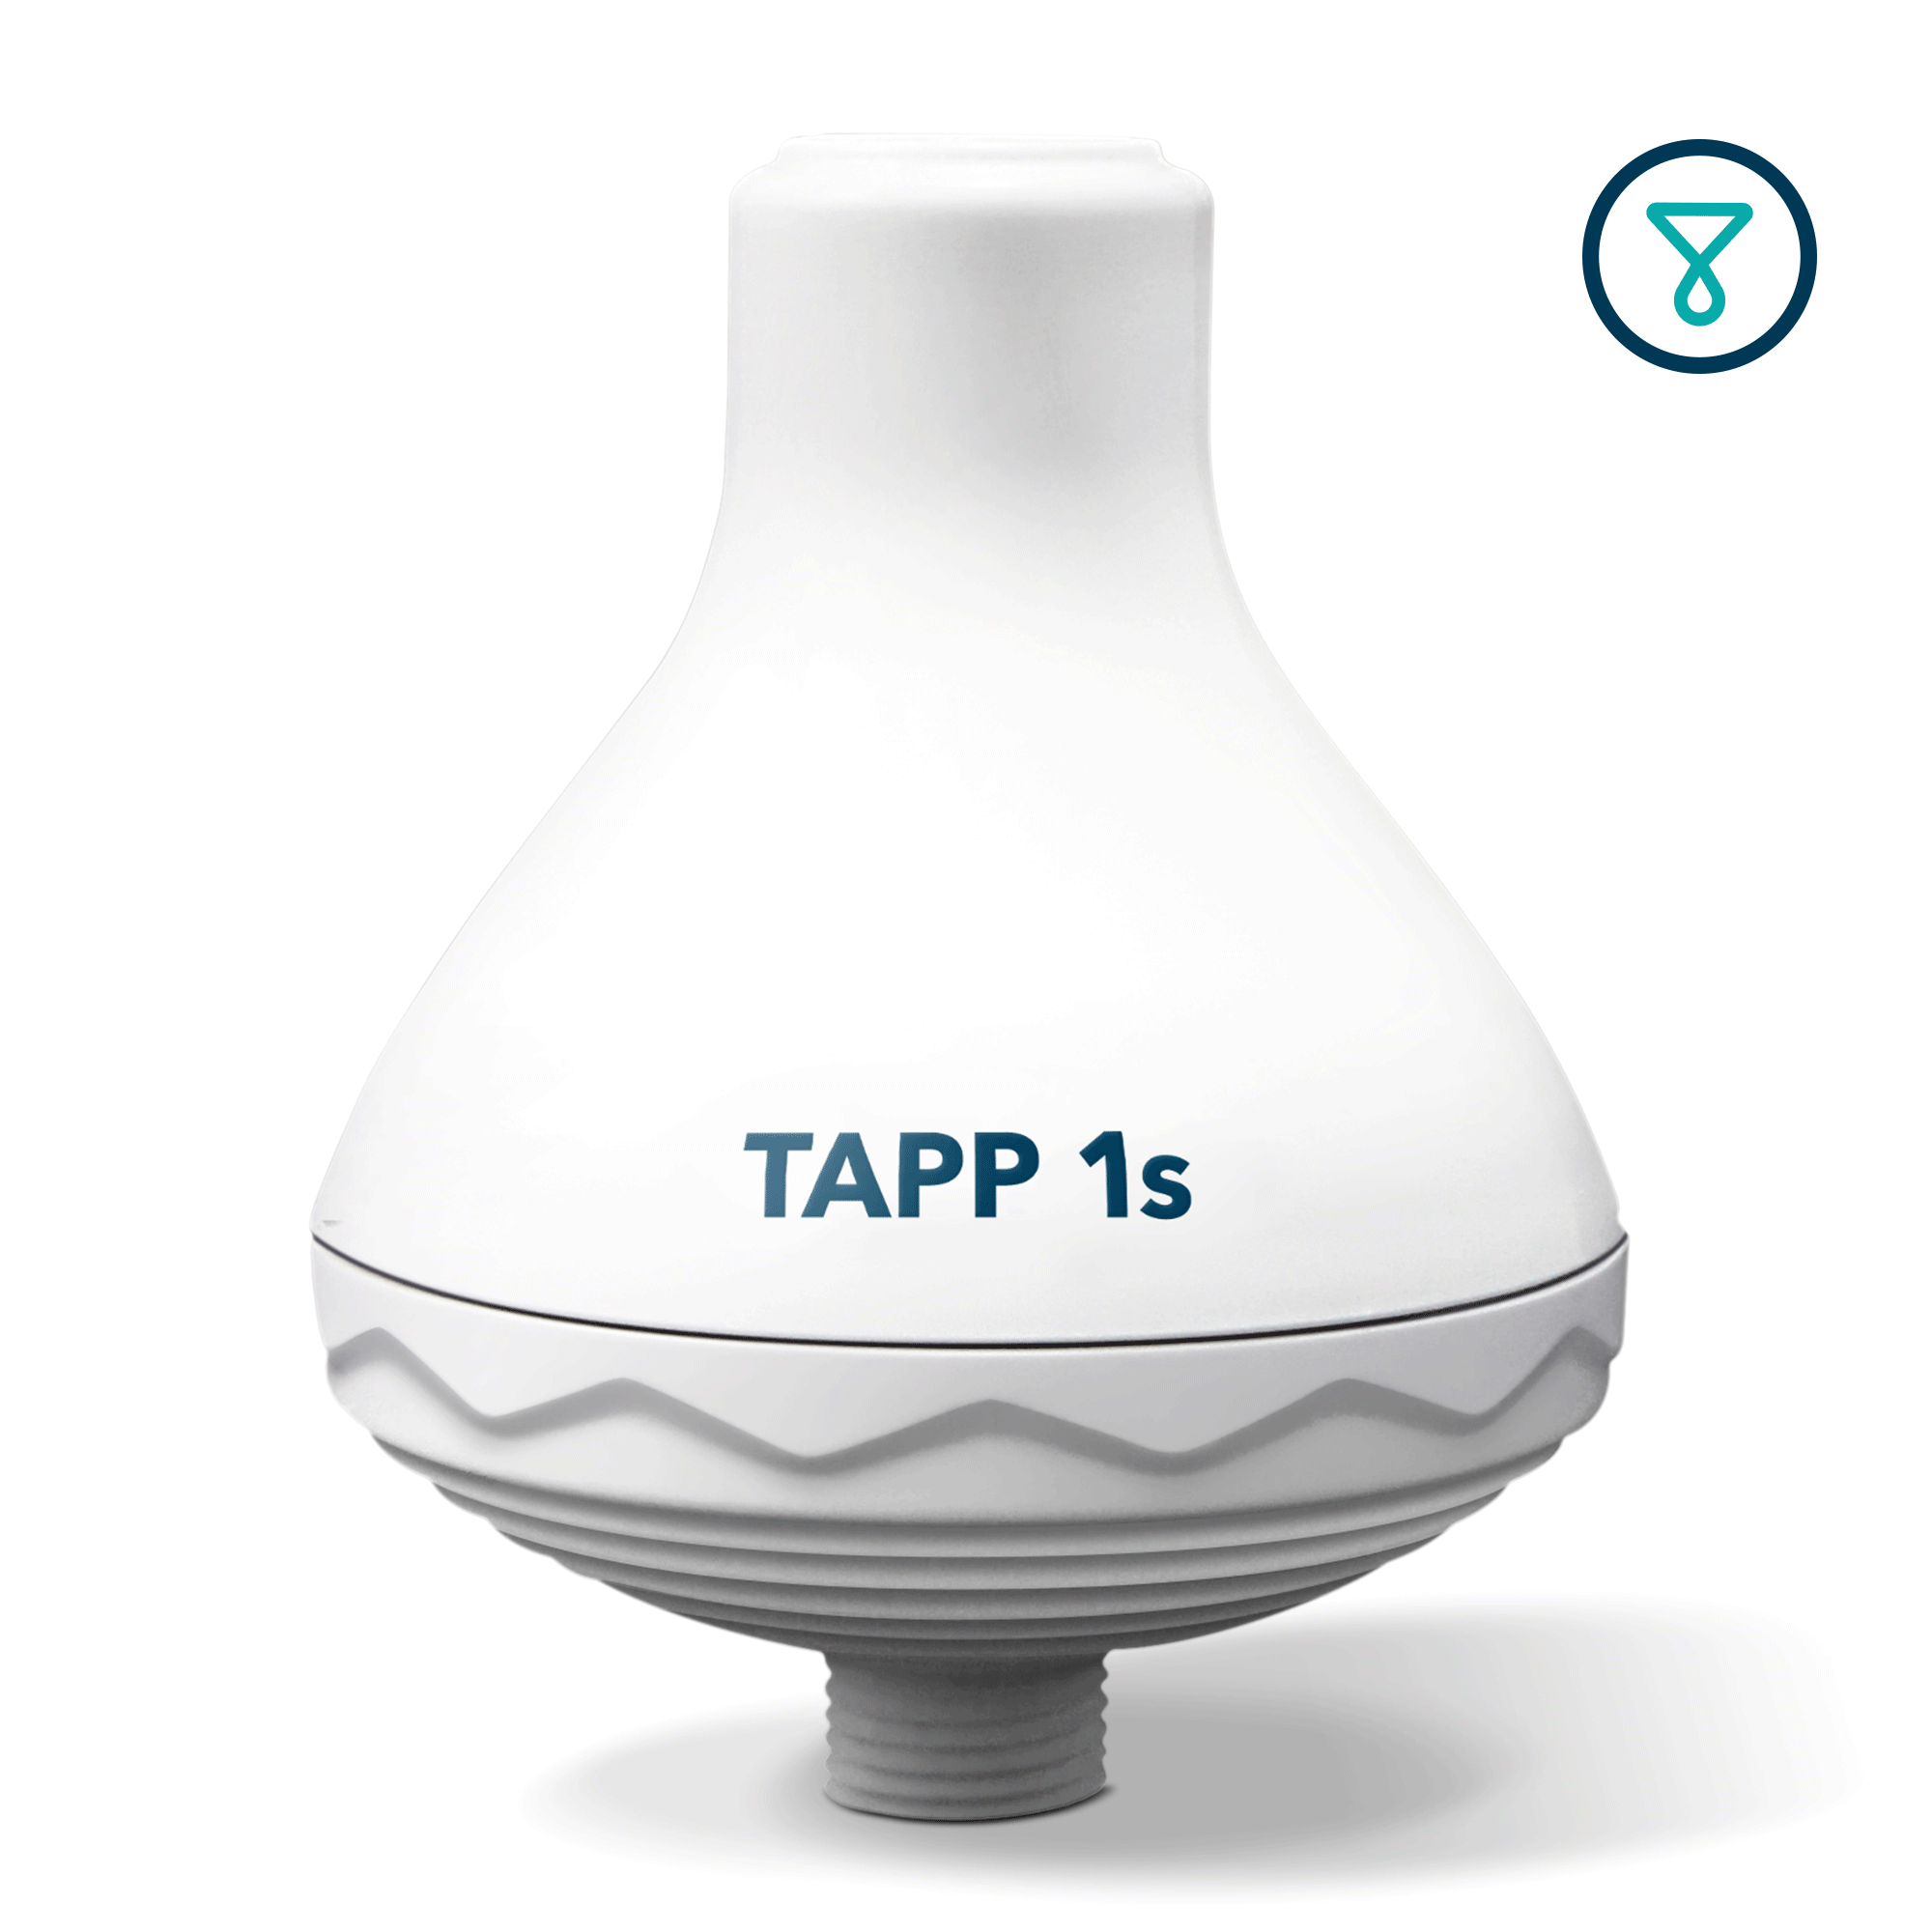 TAPP 1s Shower Filter